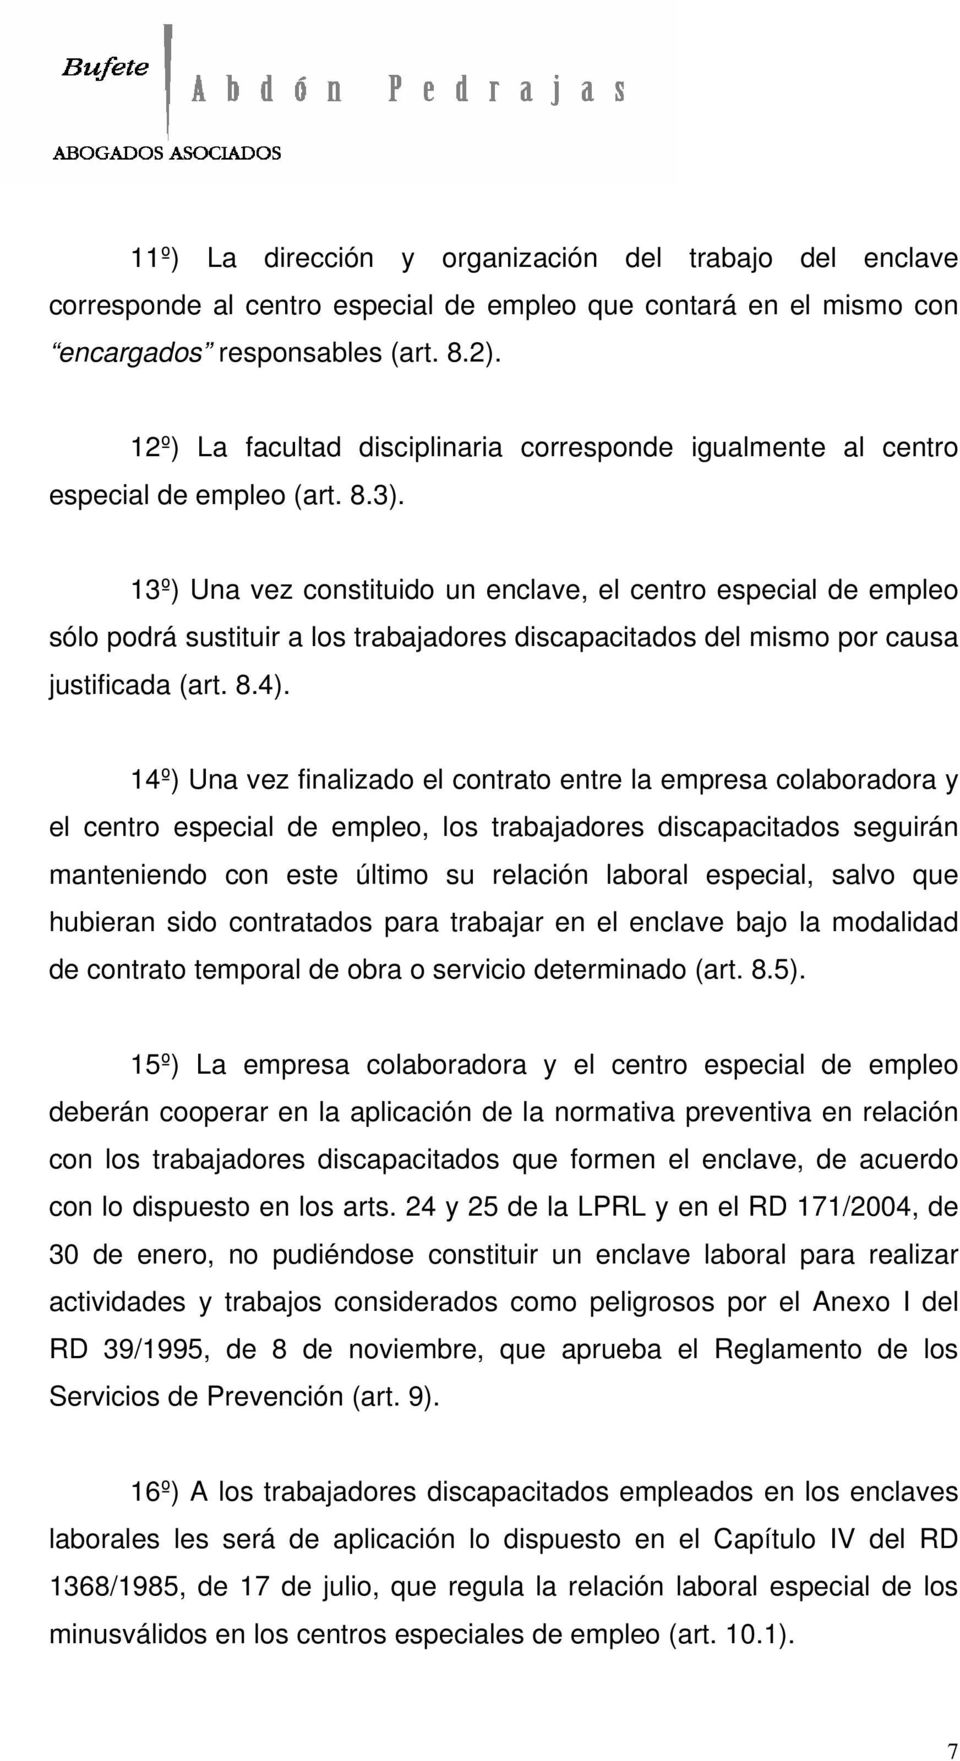 13º) Una vez constituido un enclave, el centro especial de empleo sólo podrá sustituir a los trabajadores discapacitados del mismo por causa justificada (art. 8.4).